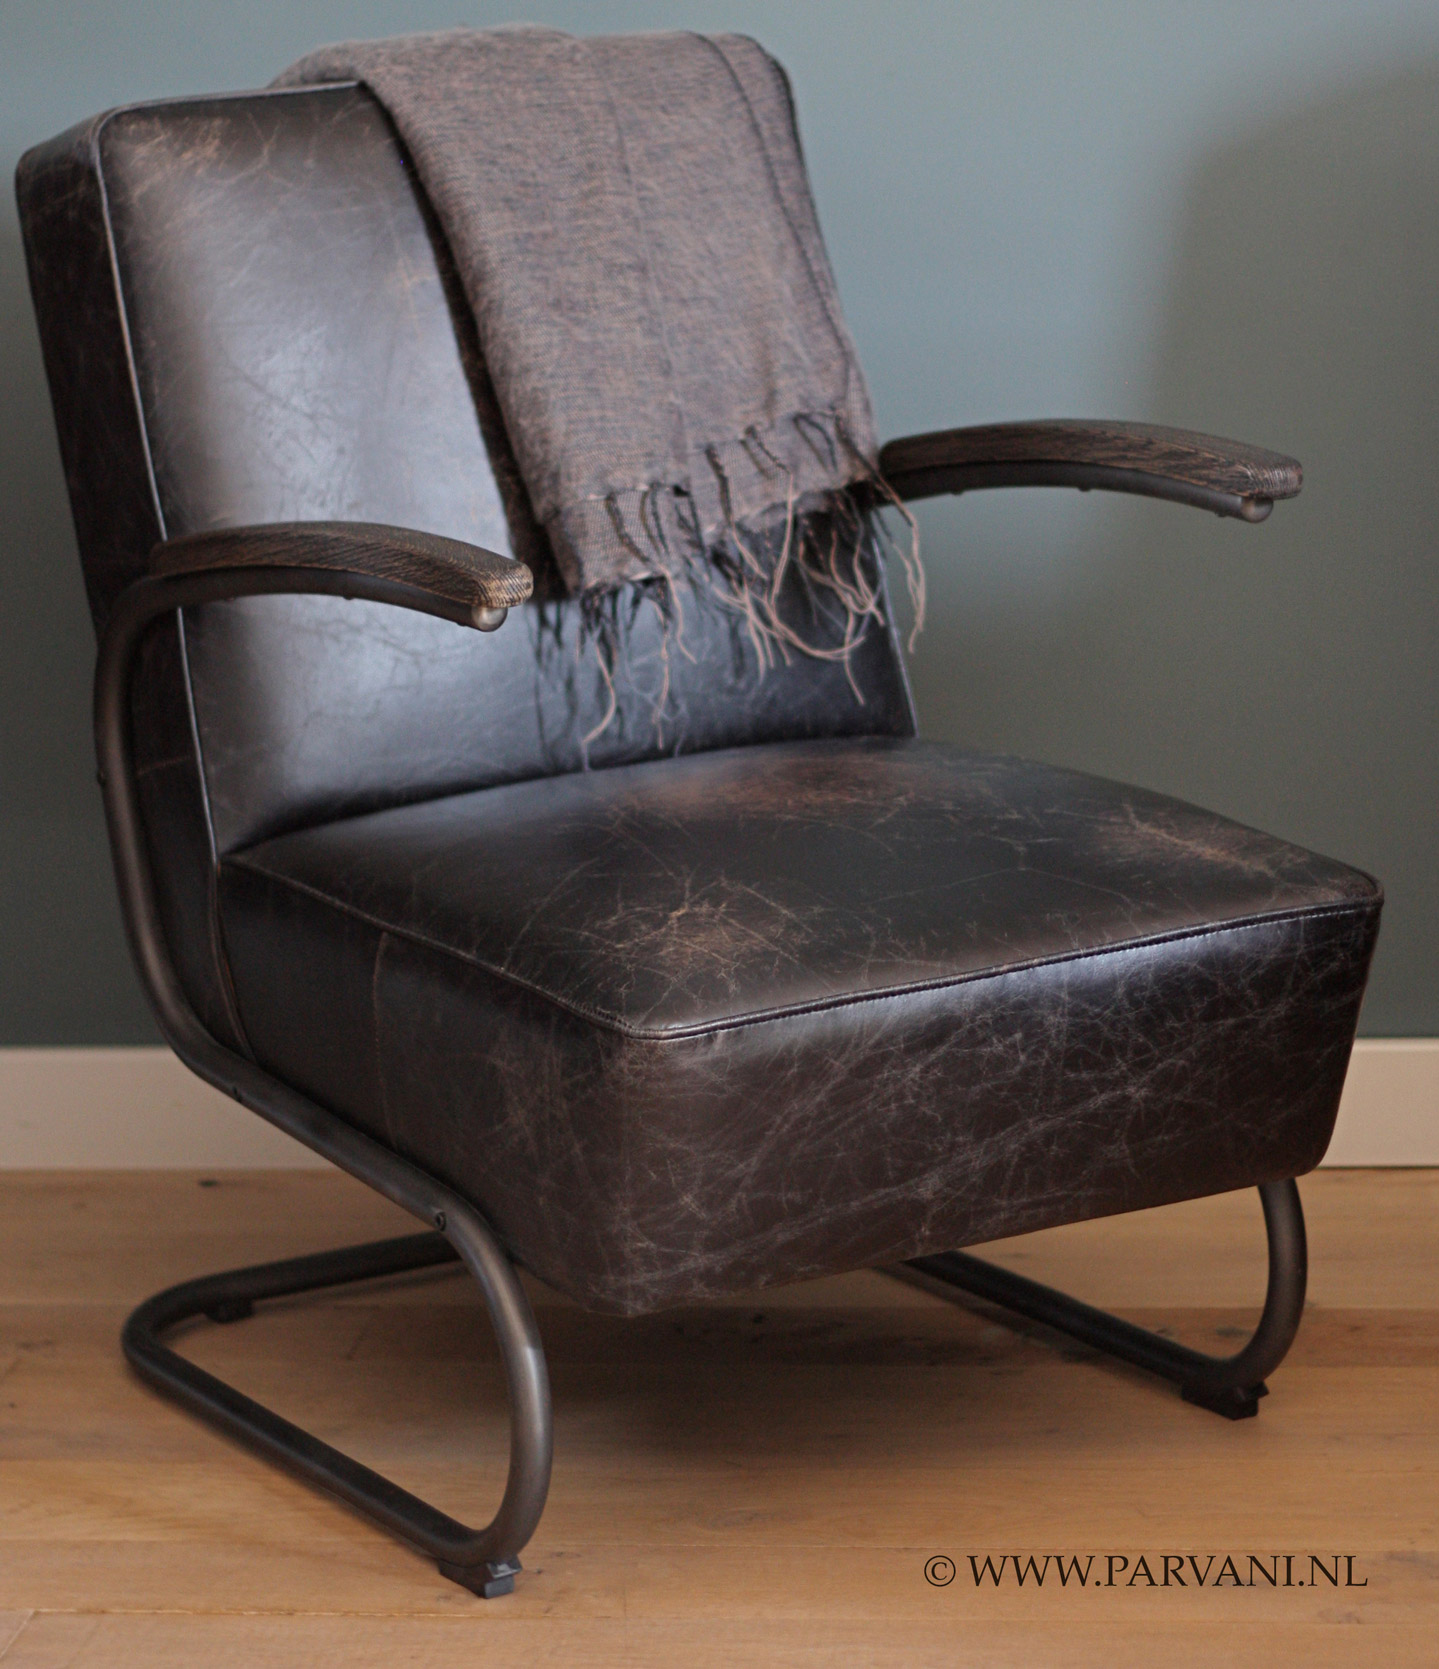 Helemaal droog Arthur Conan Doyle ontvangen Vintage-leren-fauteuil-stoel-robuust | Parvani